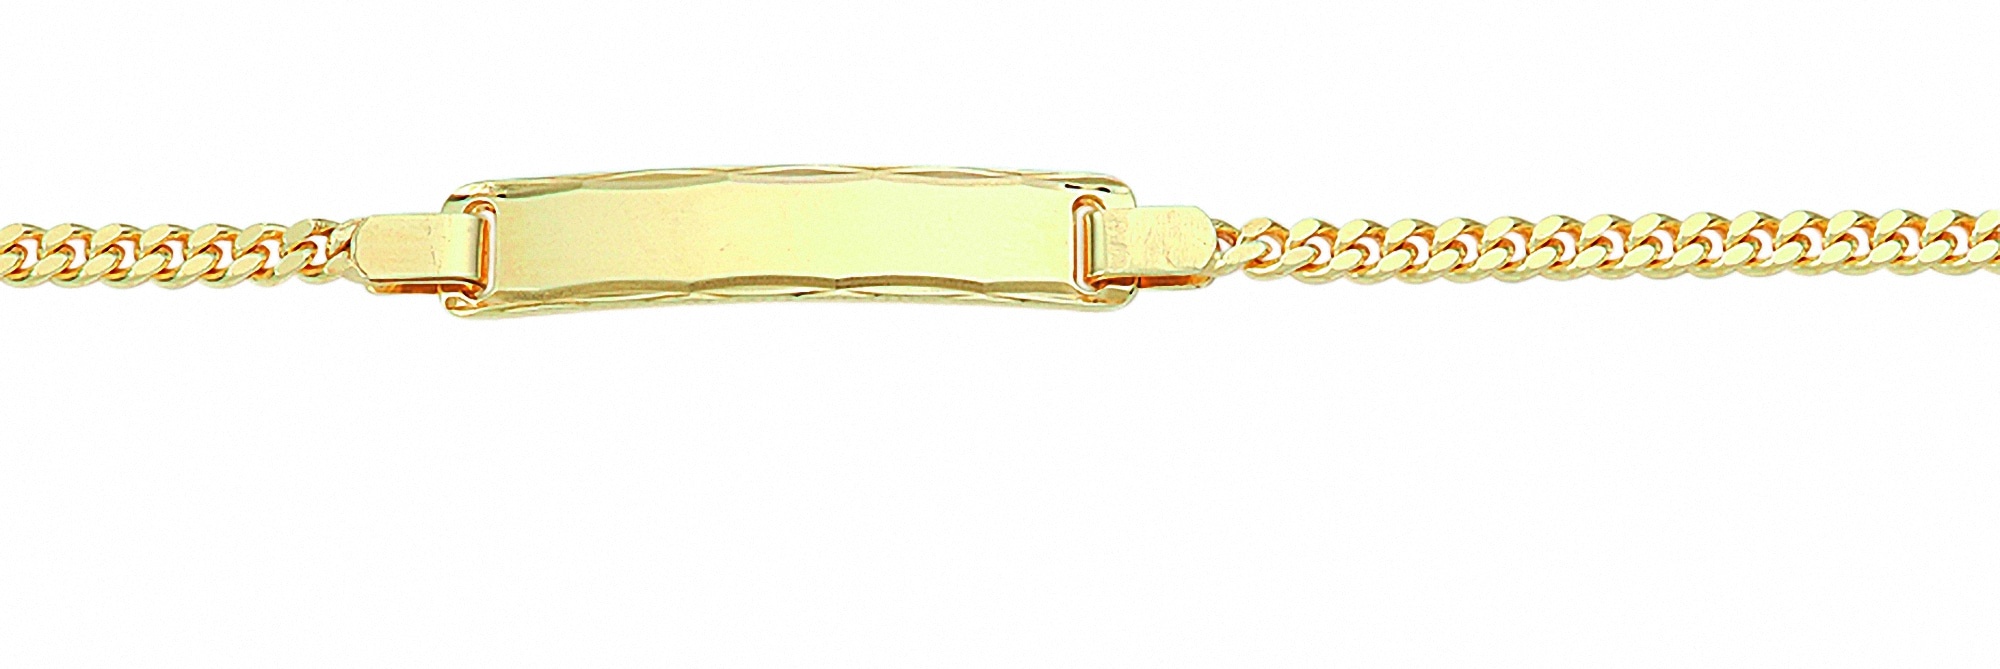 Goldarmband ADELIA ́S "Damen Goldschmuck 333 Gold Flach Panzer Armband 18,5 cm" Armbänder Gr. 18,5, Gelbgold 333, goldfarben (gold) Damen Armbänder Gold